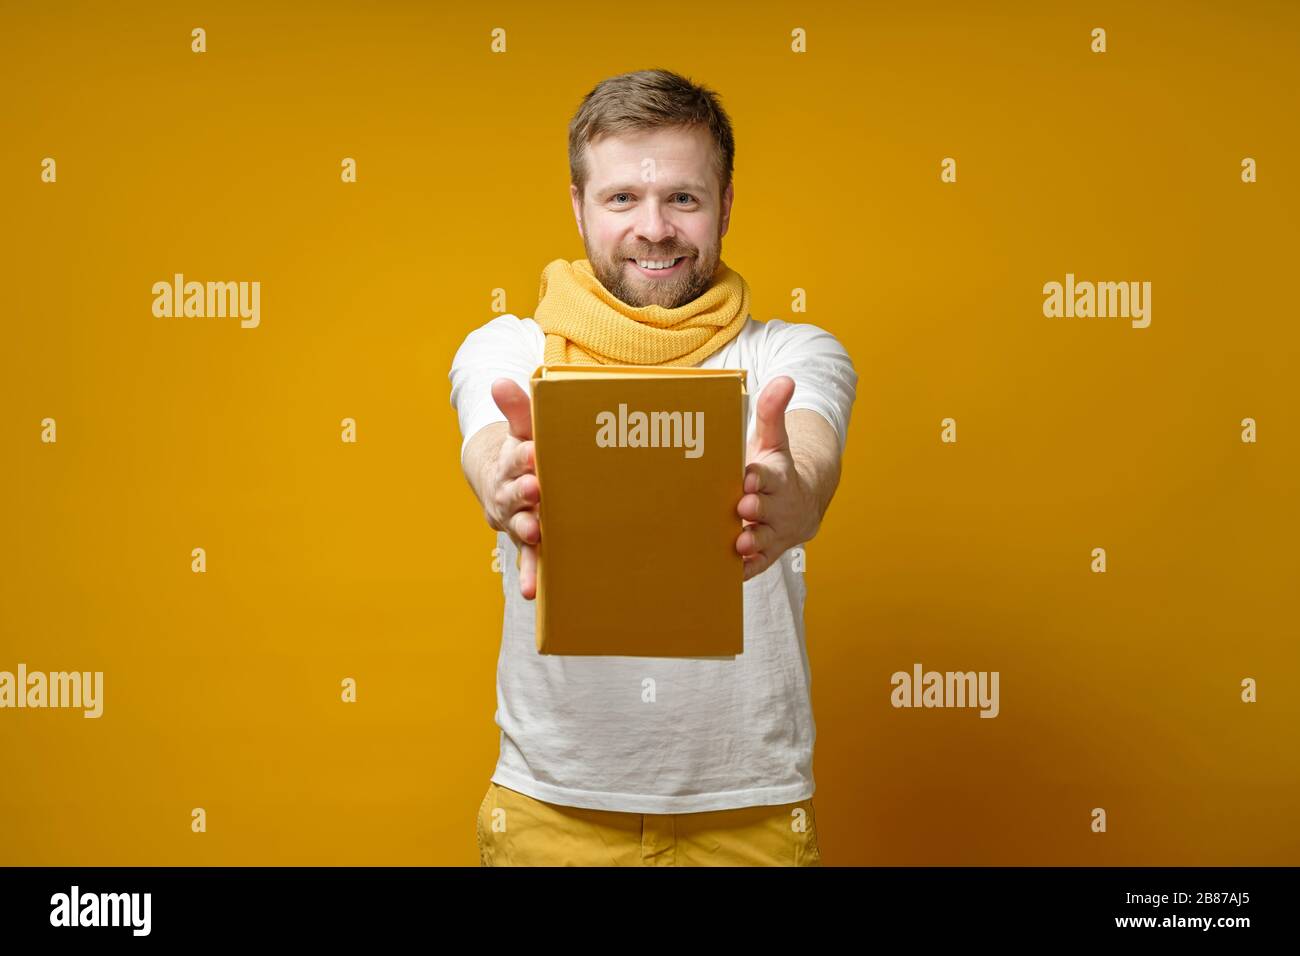 L'uomo soddisfatto in una sciarpa gialla tiene un libro sulle mani allungate, lo offre e sorride alla macchina fotografica. Concetto di istruzione. Foto Stock